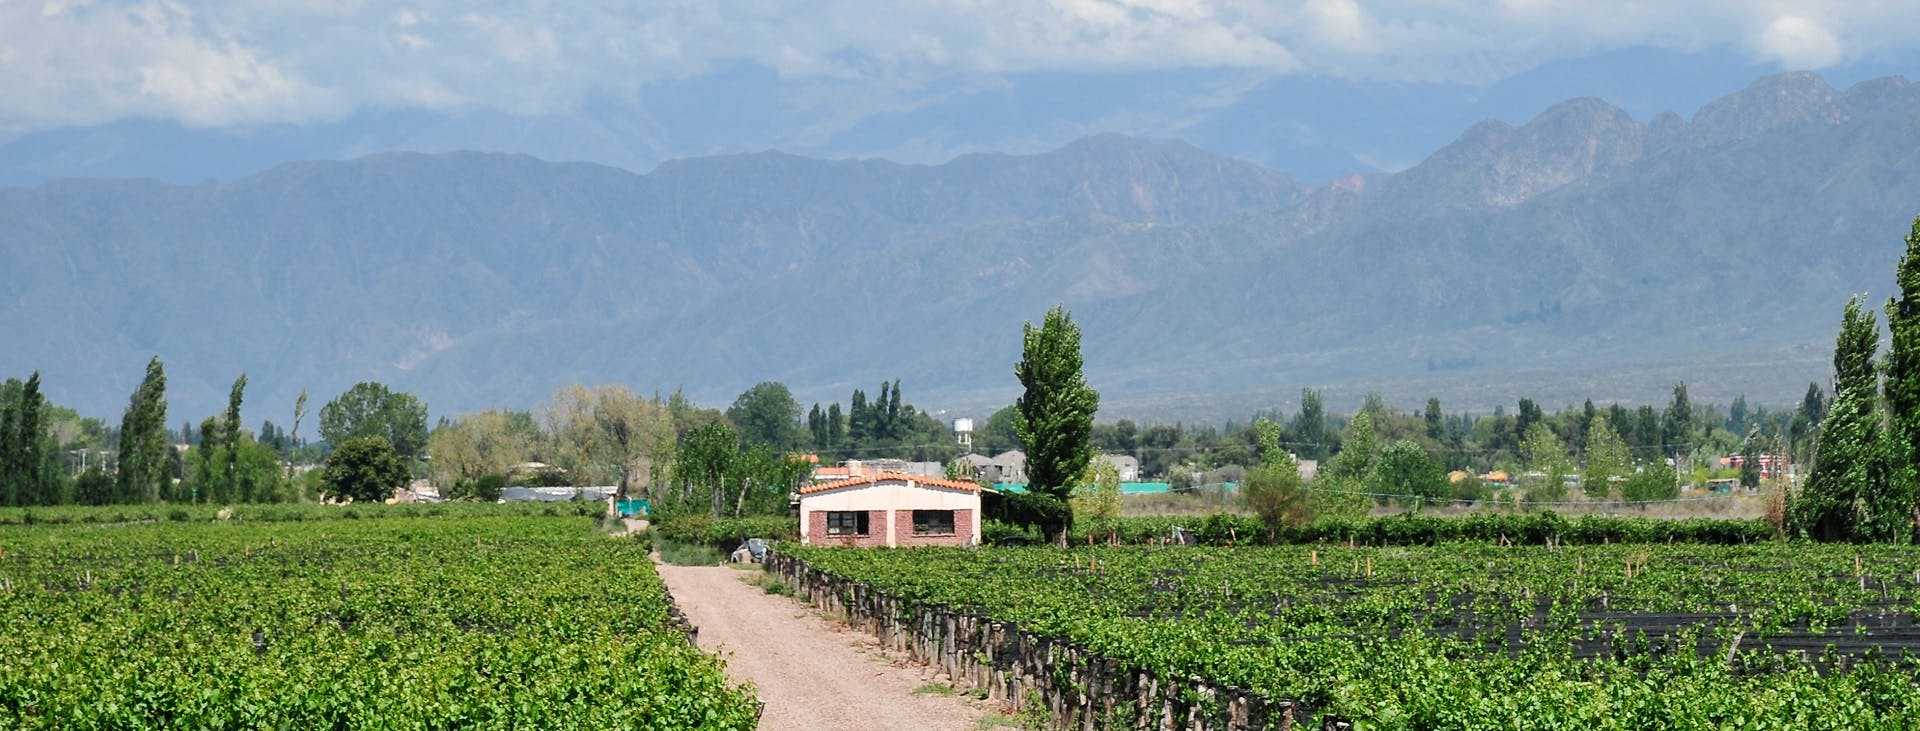 Tour dos vinhos de meio dia em Mendoza com degustação